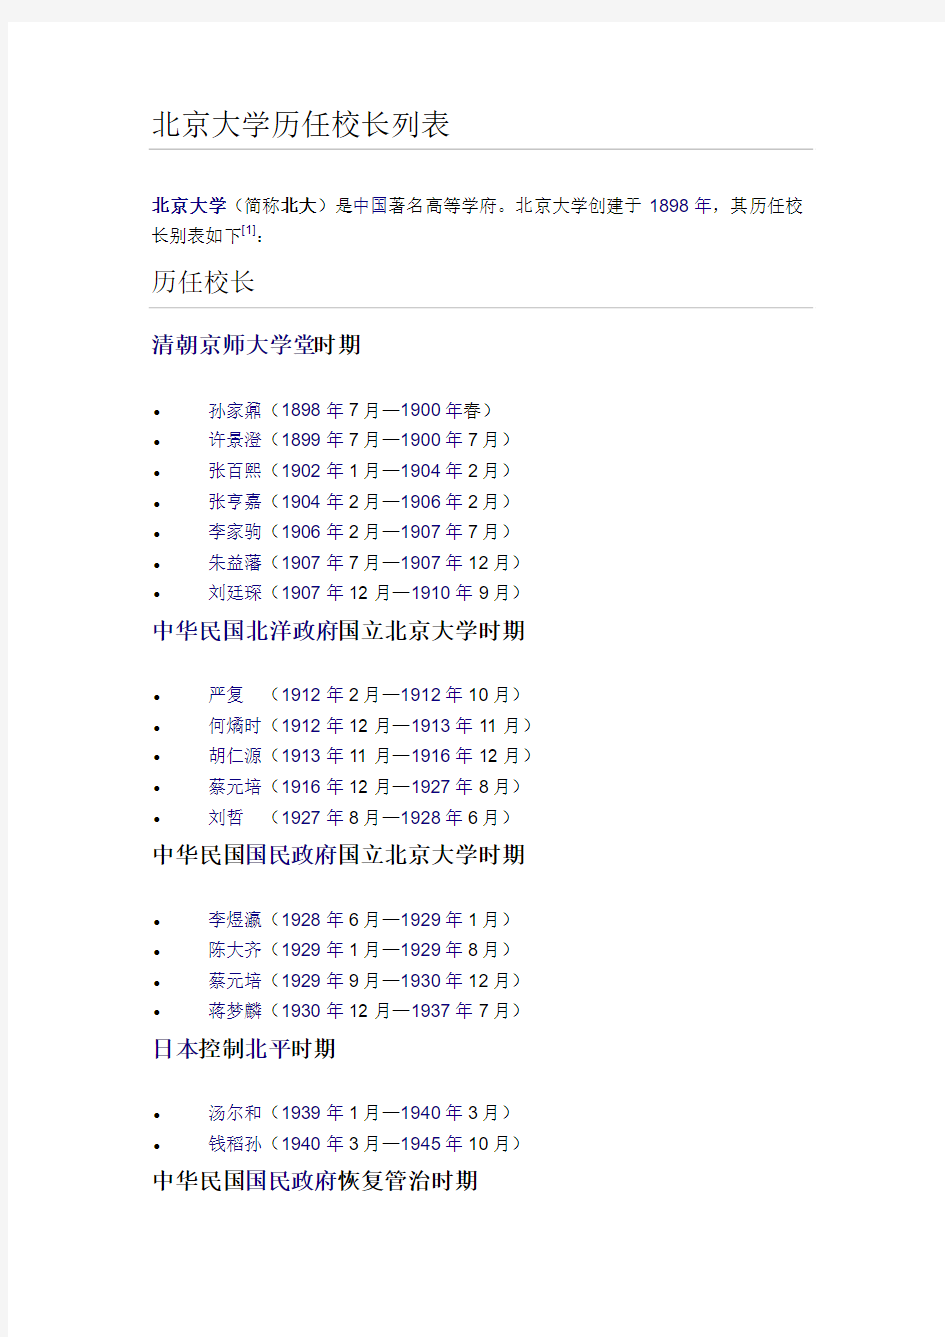 北京大学历任校长列表